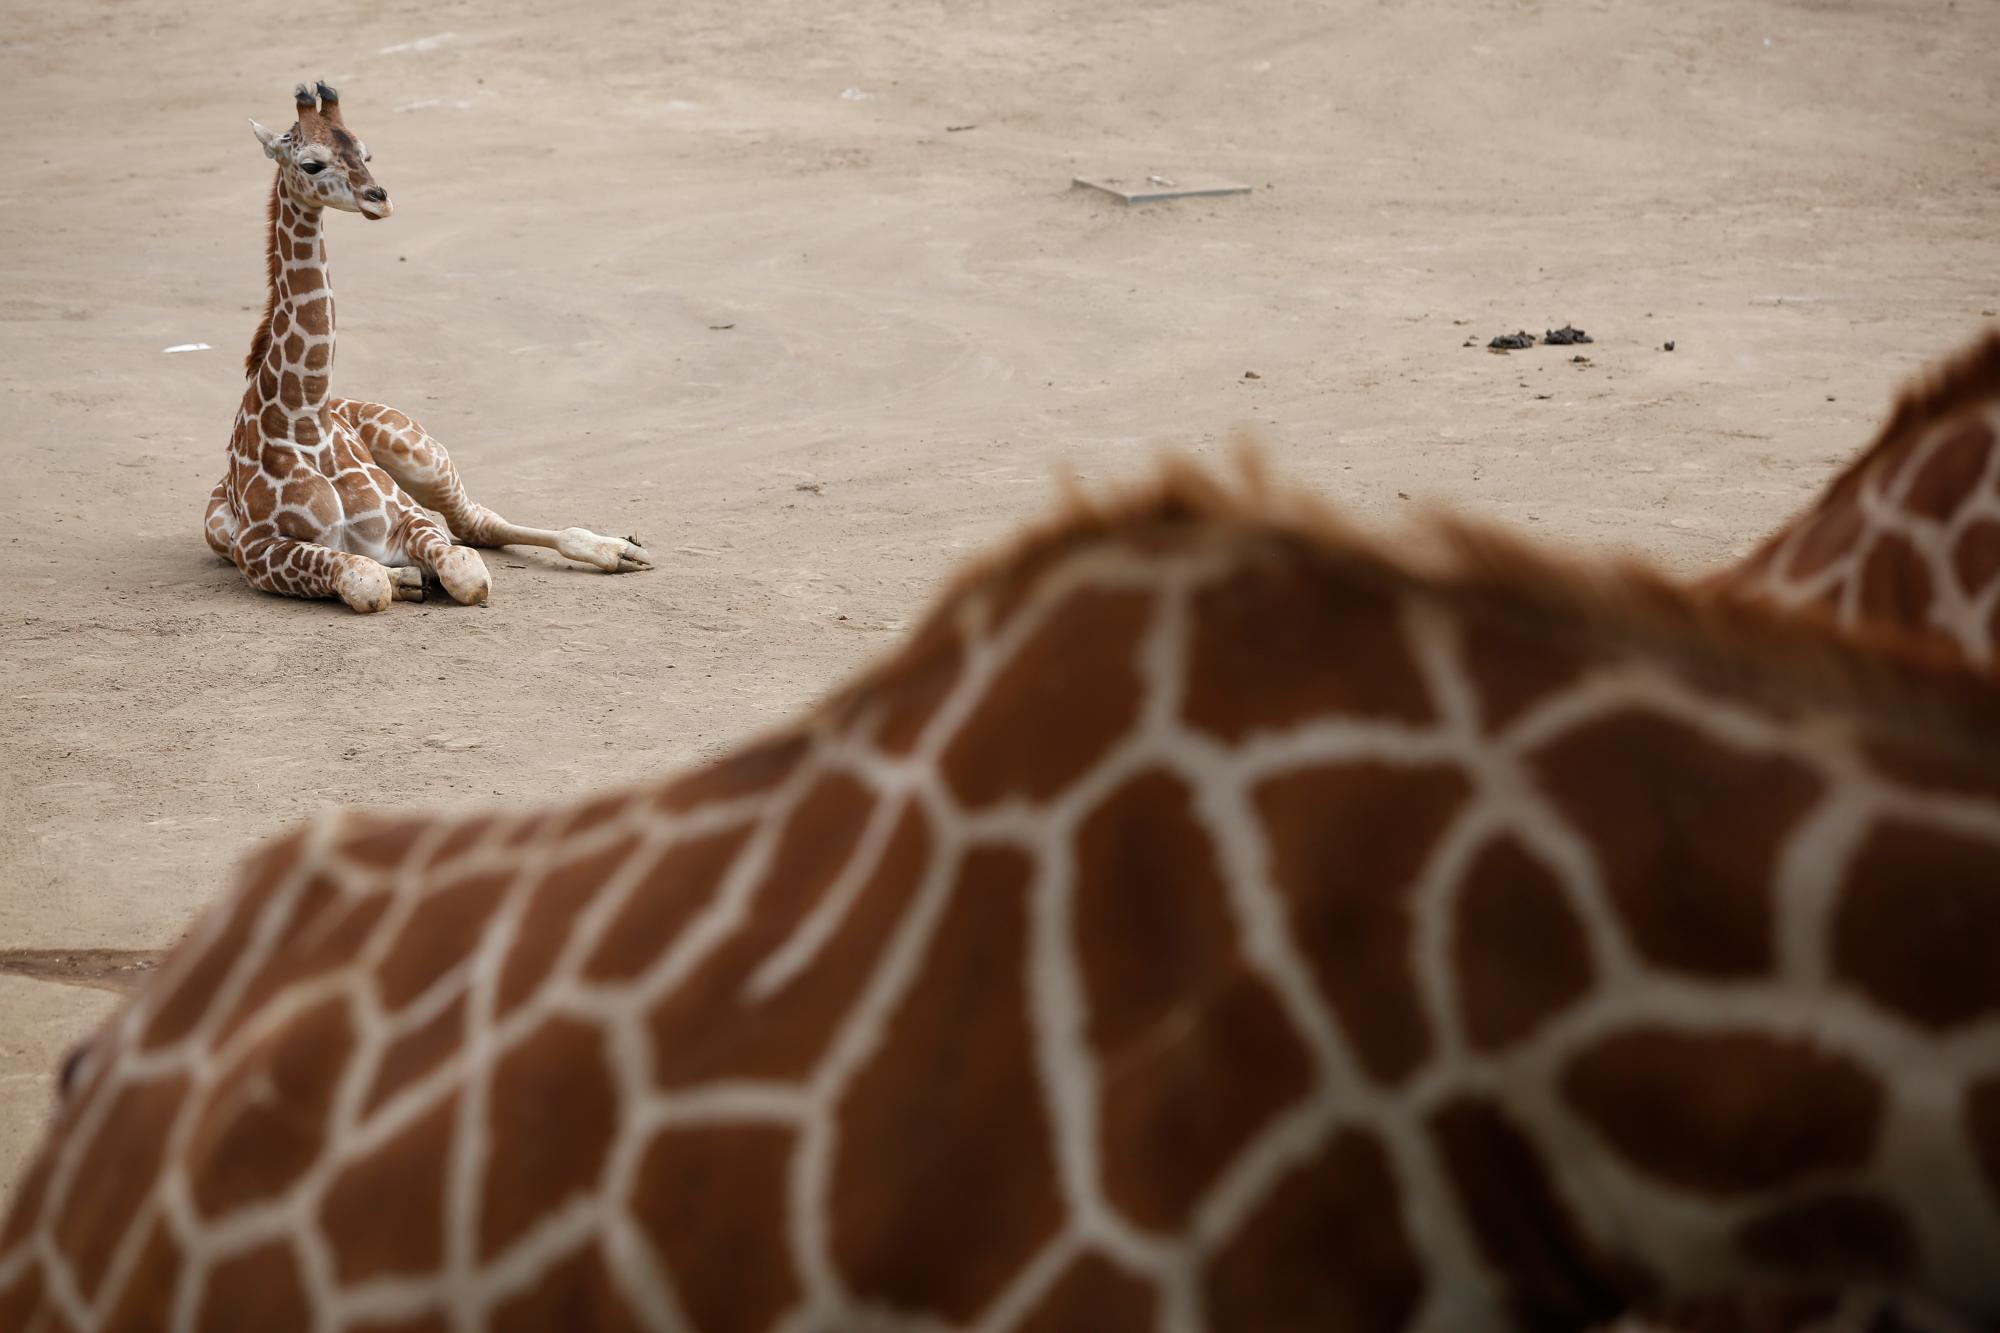 En esta imagen, tomada el 29 de diciembre de 2019, una cría de jirafa de dos meses descansa en el zoo Chapultepec, en la Ciudad de México.  La institución celebró el nacimiento de su segunda jirafa en 2019, que ya tiene la altura de un humano adulto. La cría, que es una hembra, fue presentada luego de la obligada cuarentena tras su nacimiento el 23 de octubre. Su nombre se decidirá en una votación popular. (AP Foto/Ginnette Riquelme)